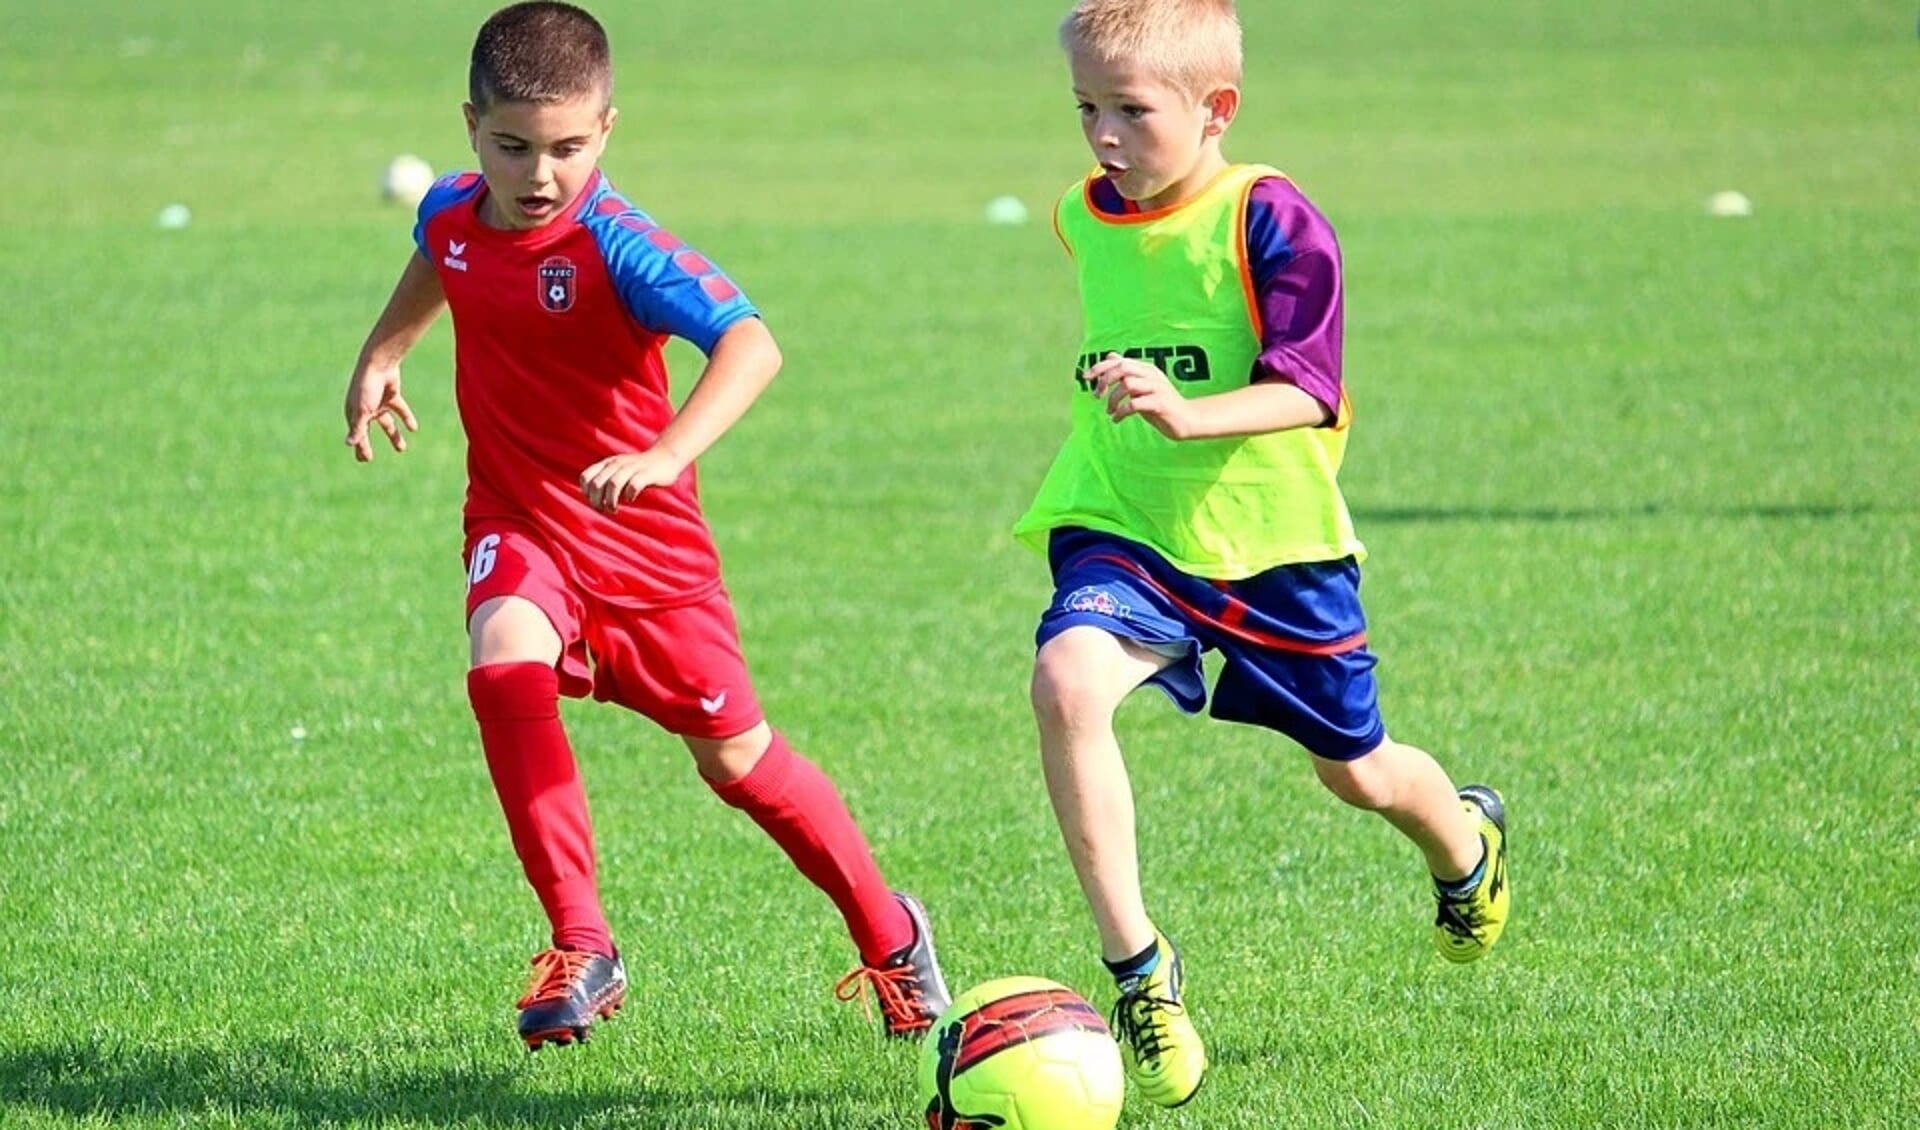 Stichting Leergeld zorgt ervoor dat ook kinderen die opgroeien in armoede, lid kunnen worden van een sportvereniging.